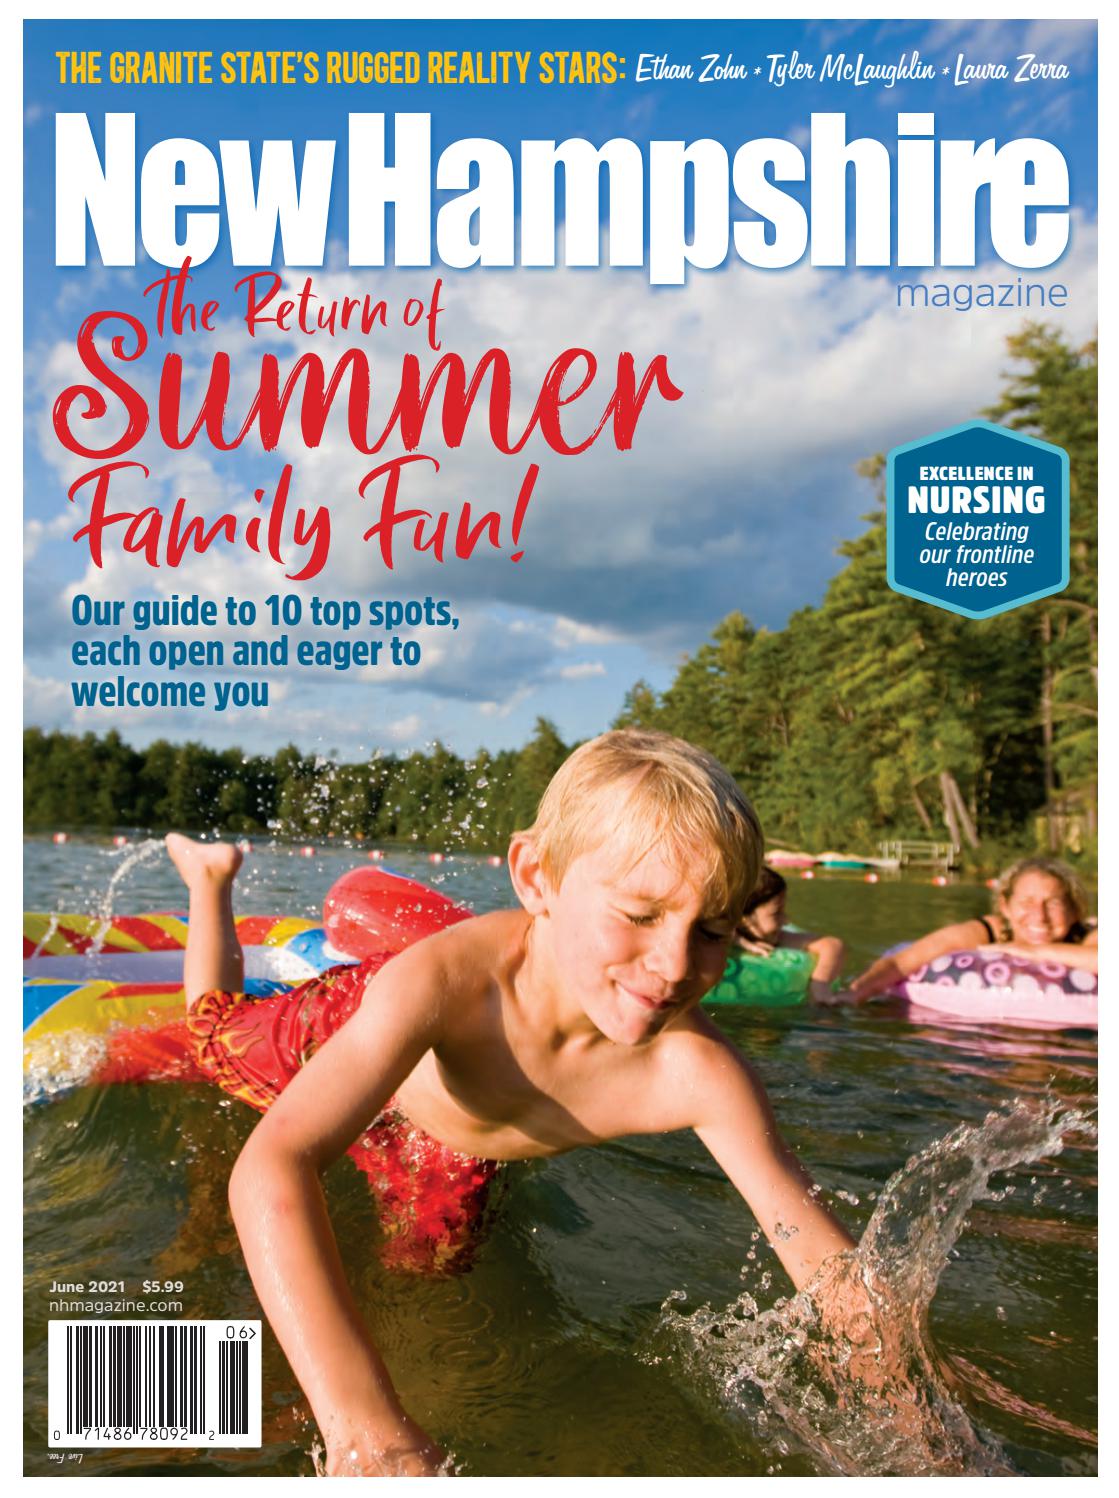 New Hampshire Magazine June 2021